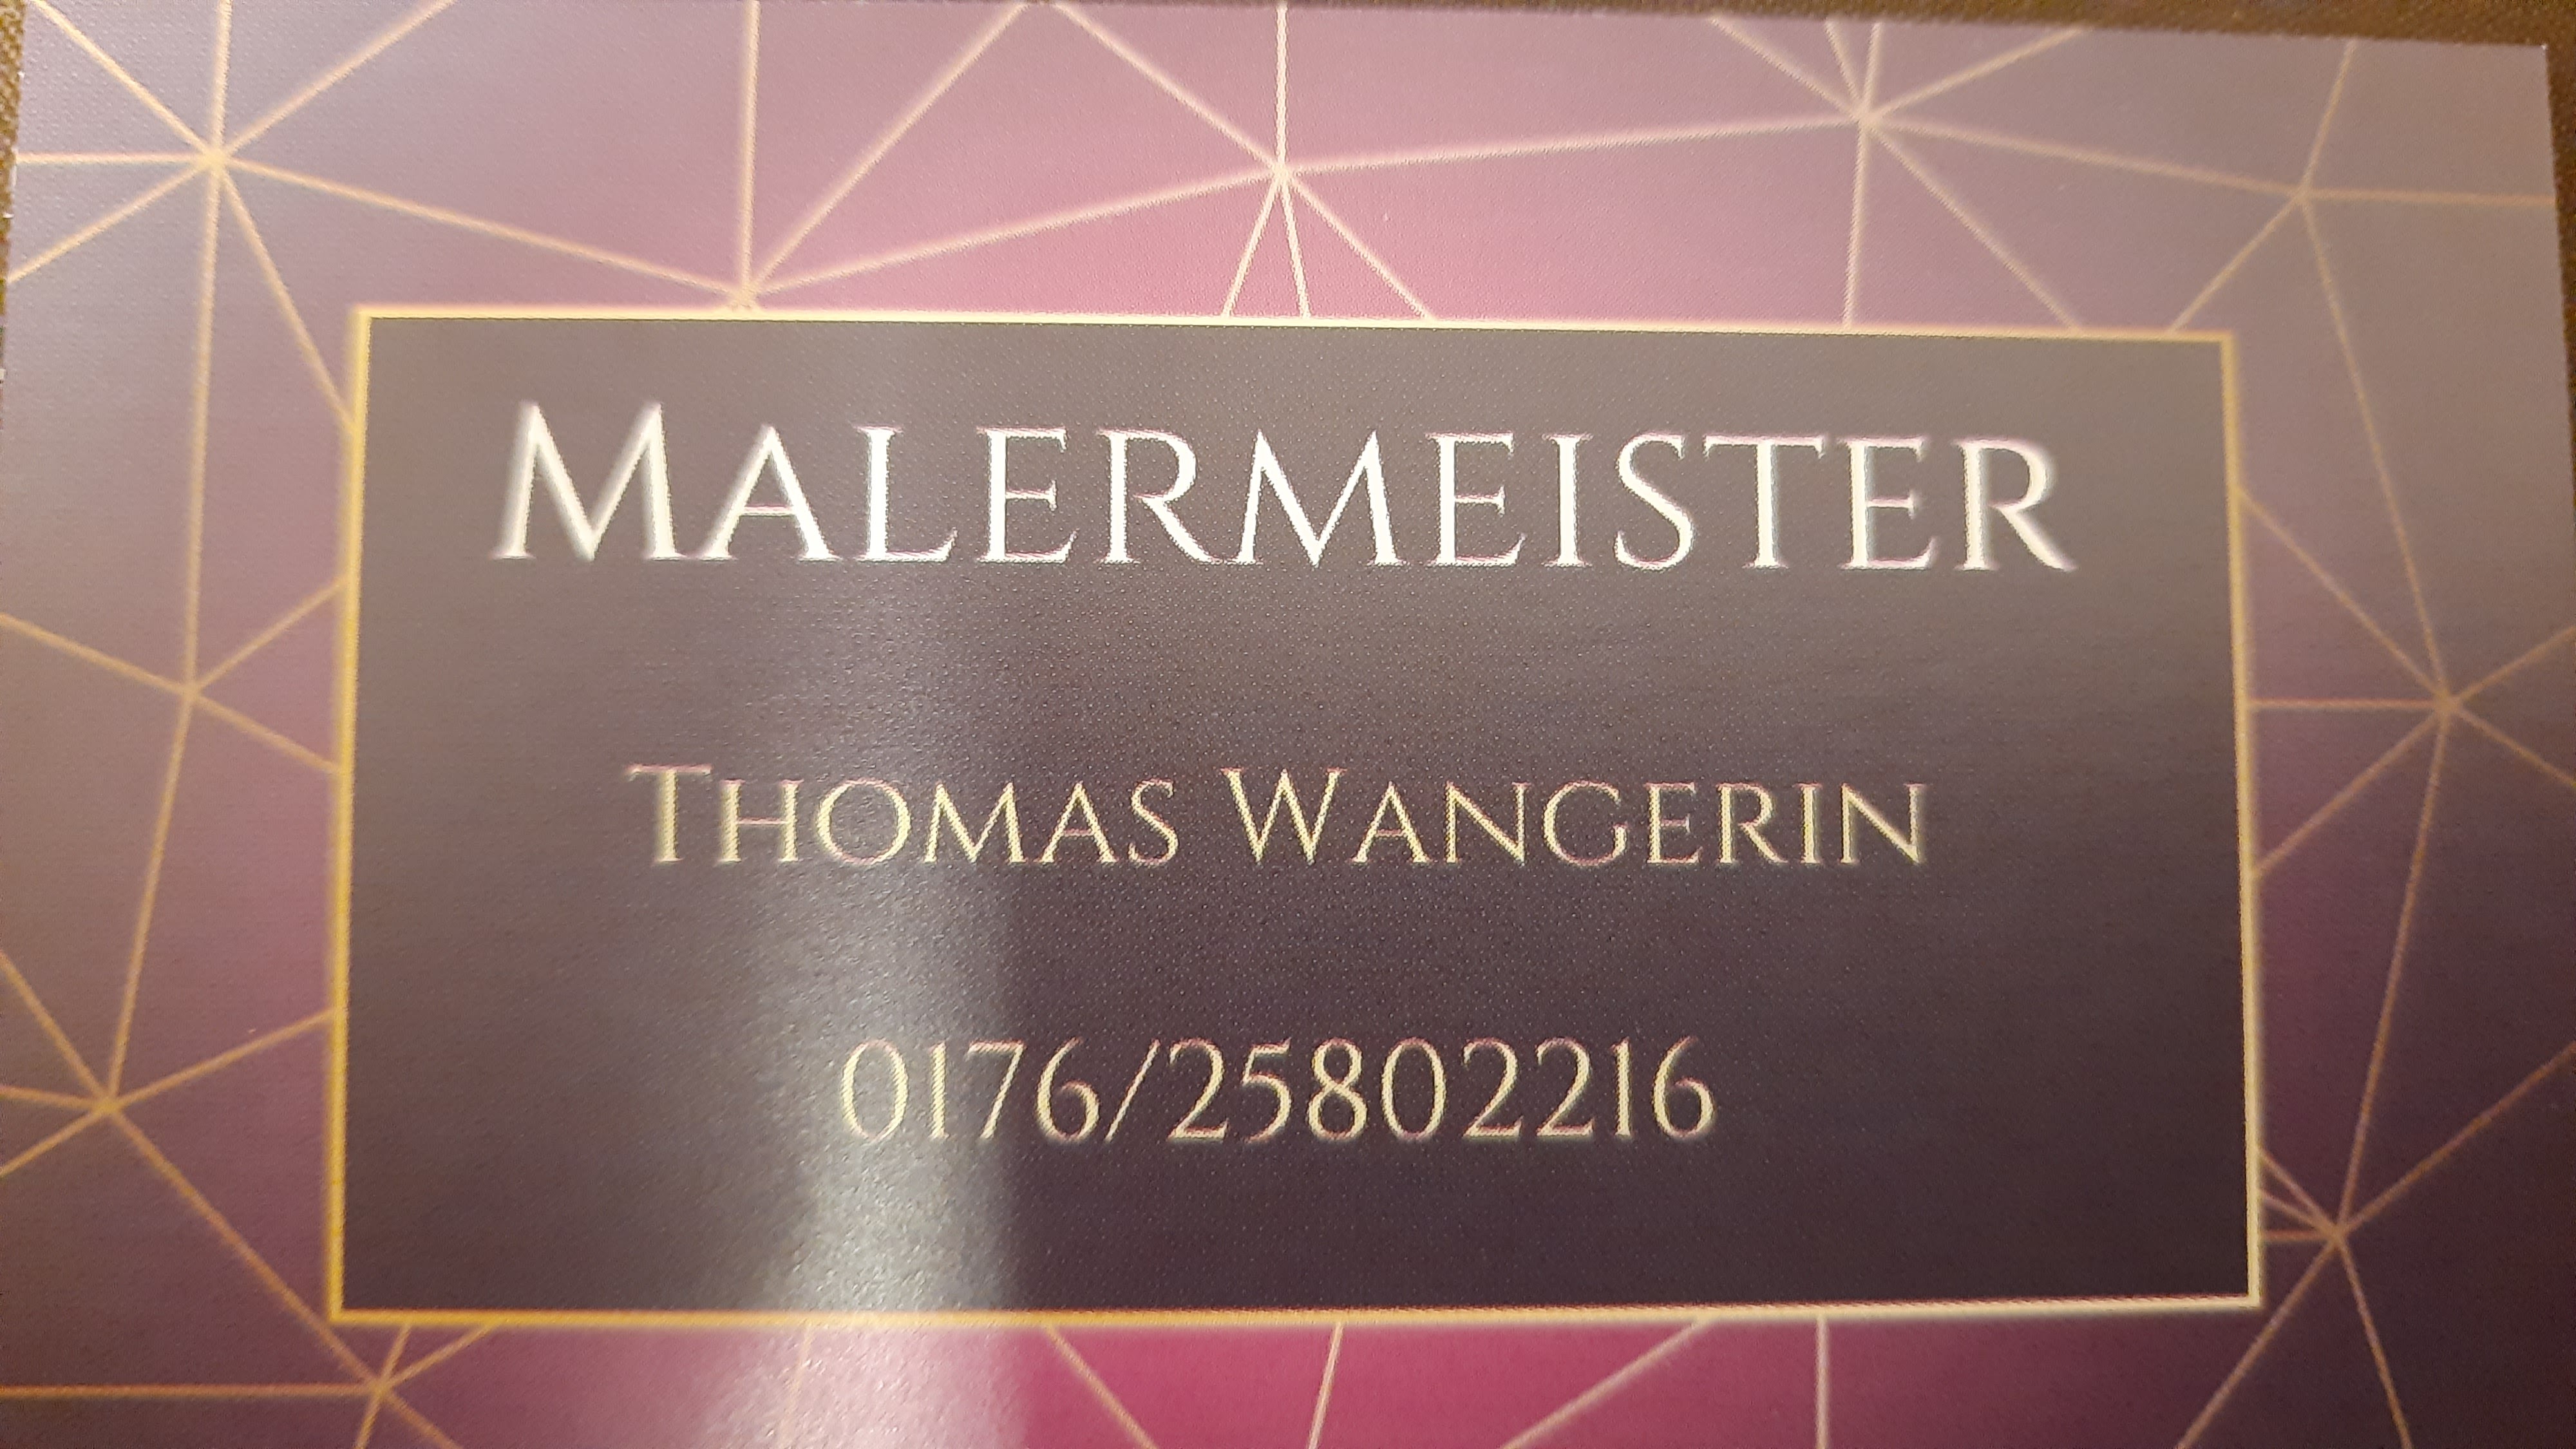 Malermeister Thomas Wangerin